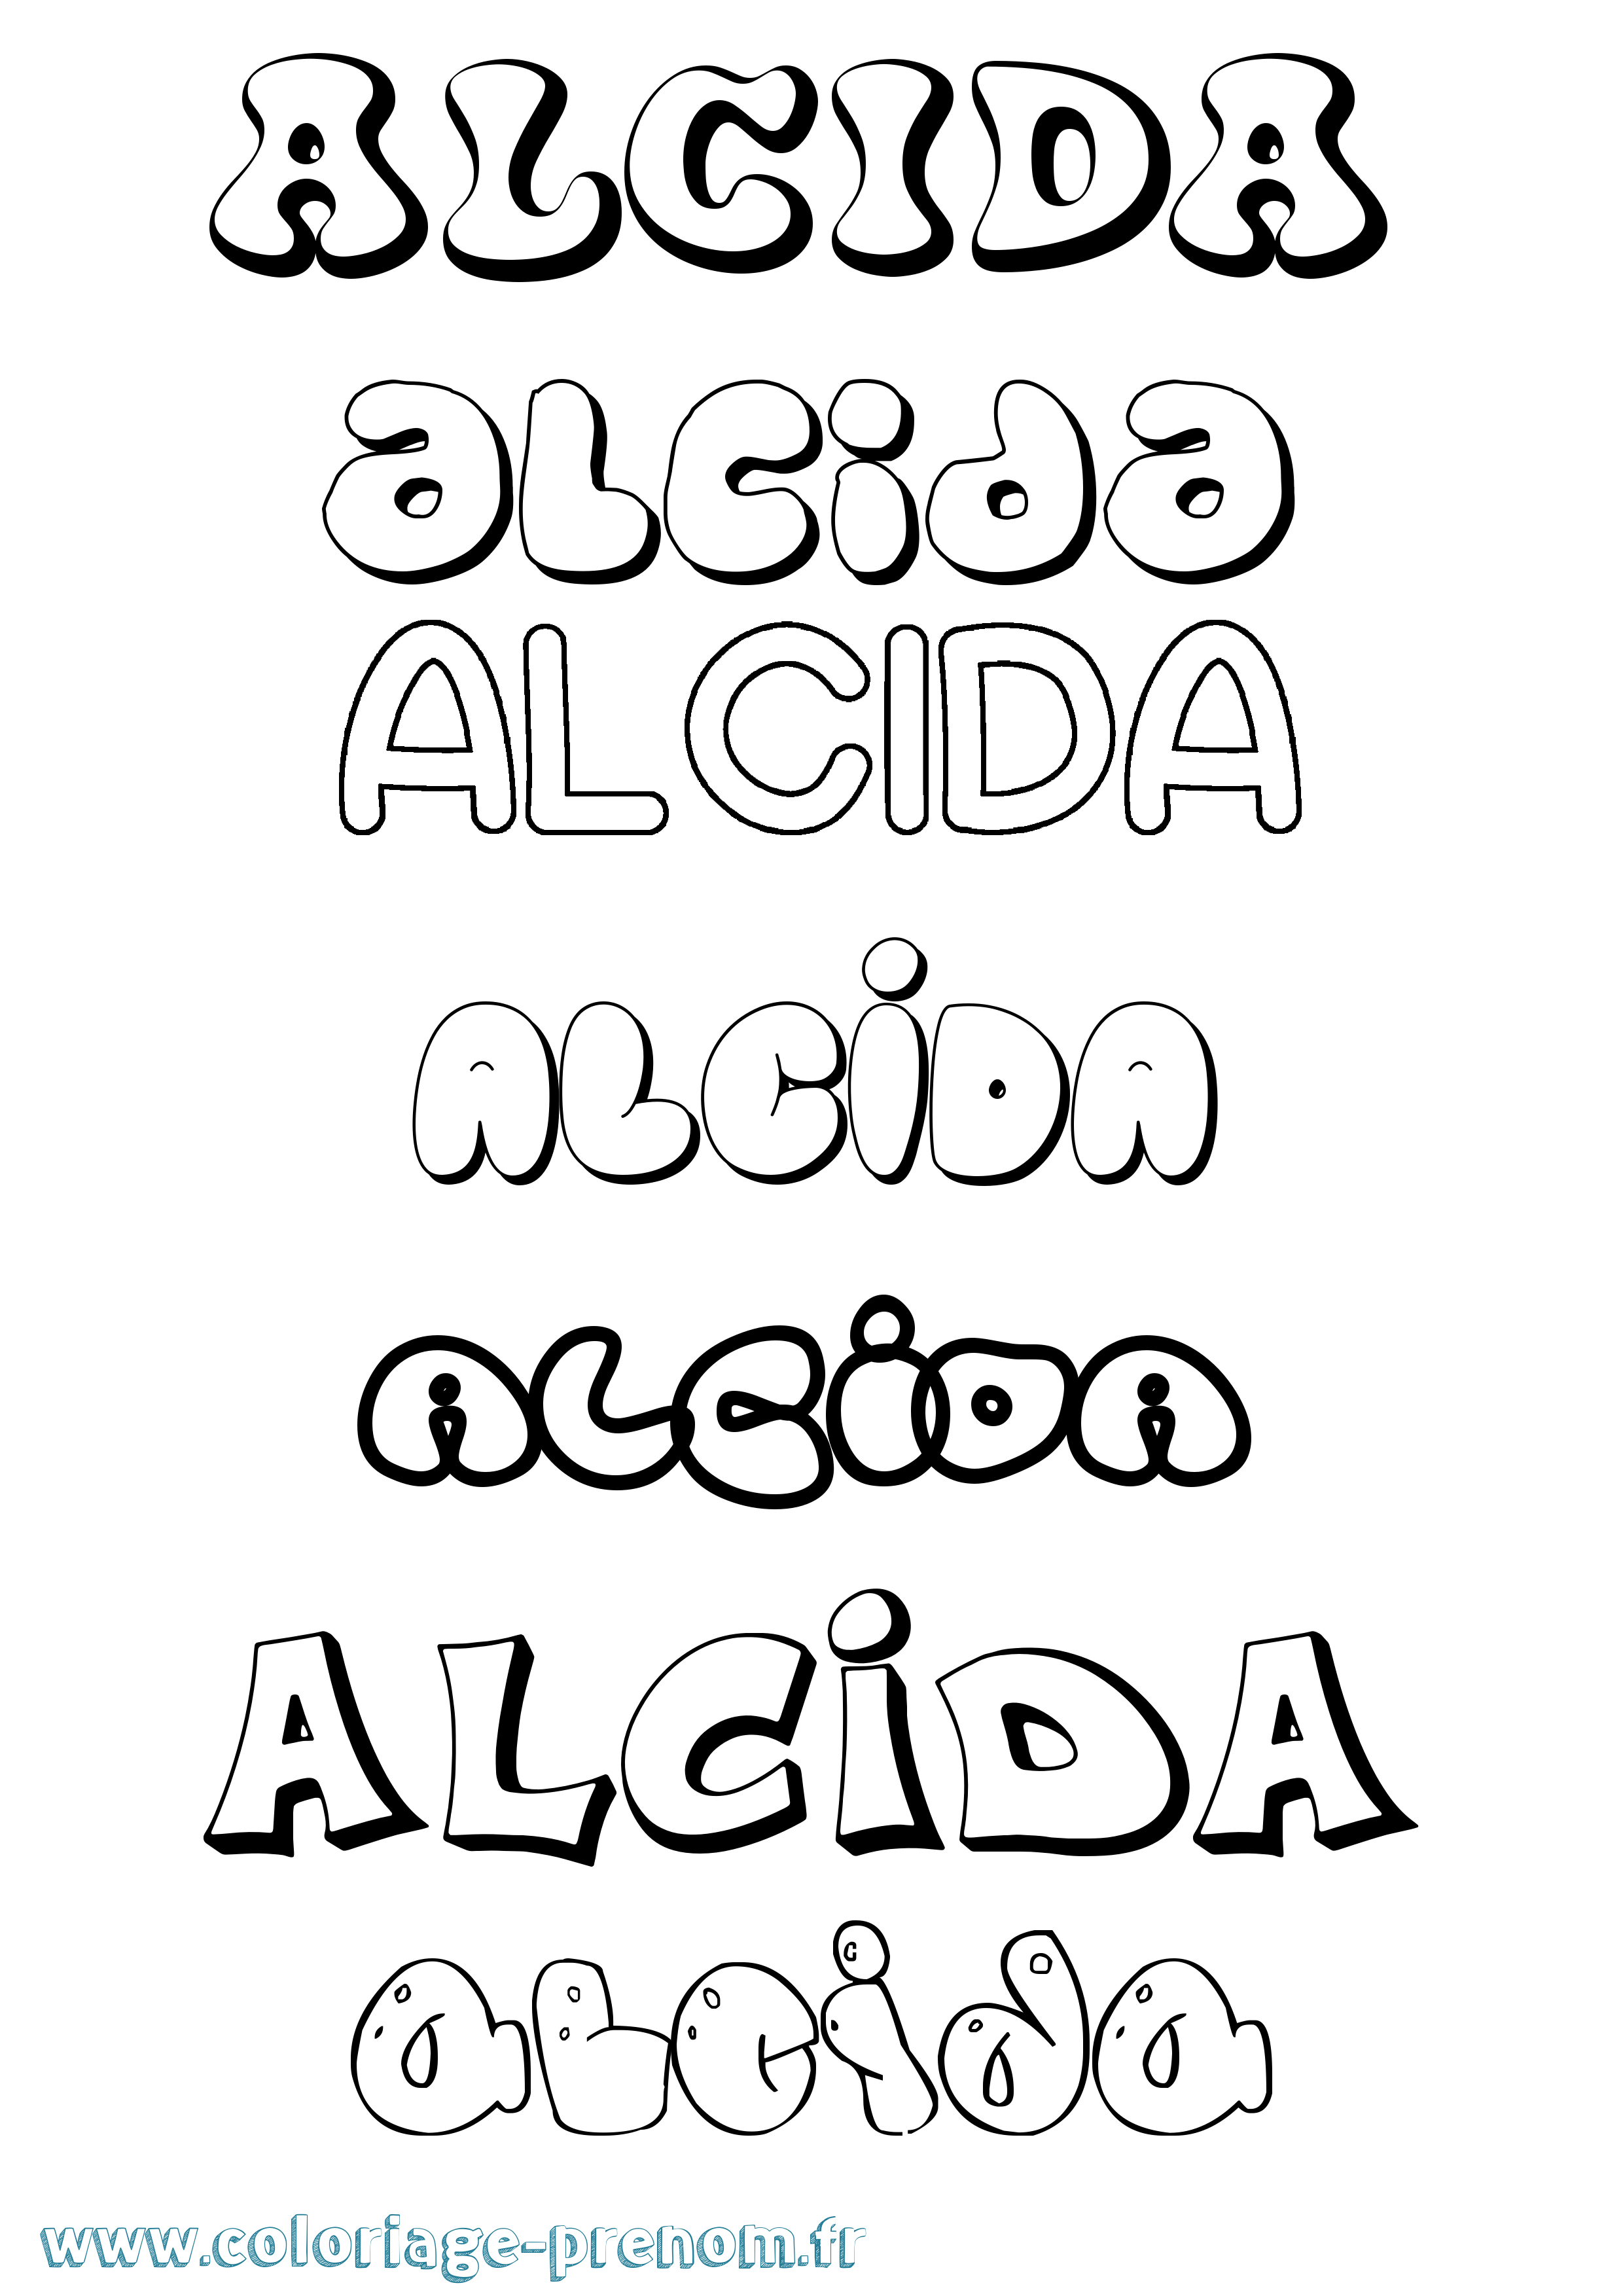 Coloriage prénom Alcida Bubble